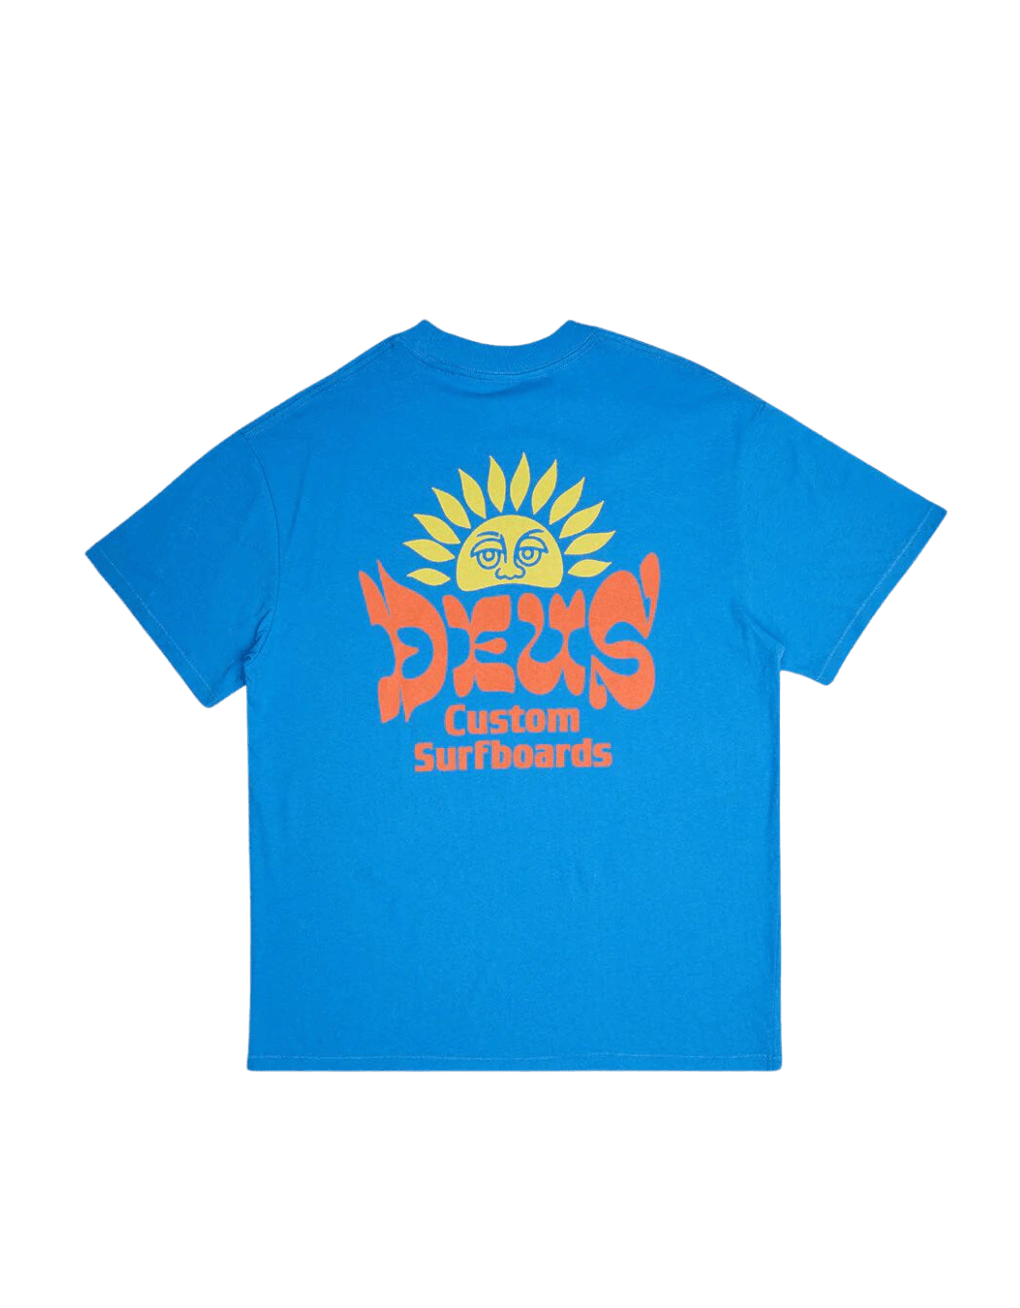 Camiseta Deus Ex Machina Sleeping Sun French Blue - ECRU